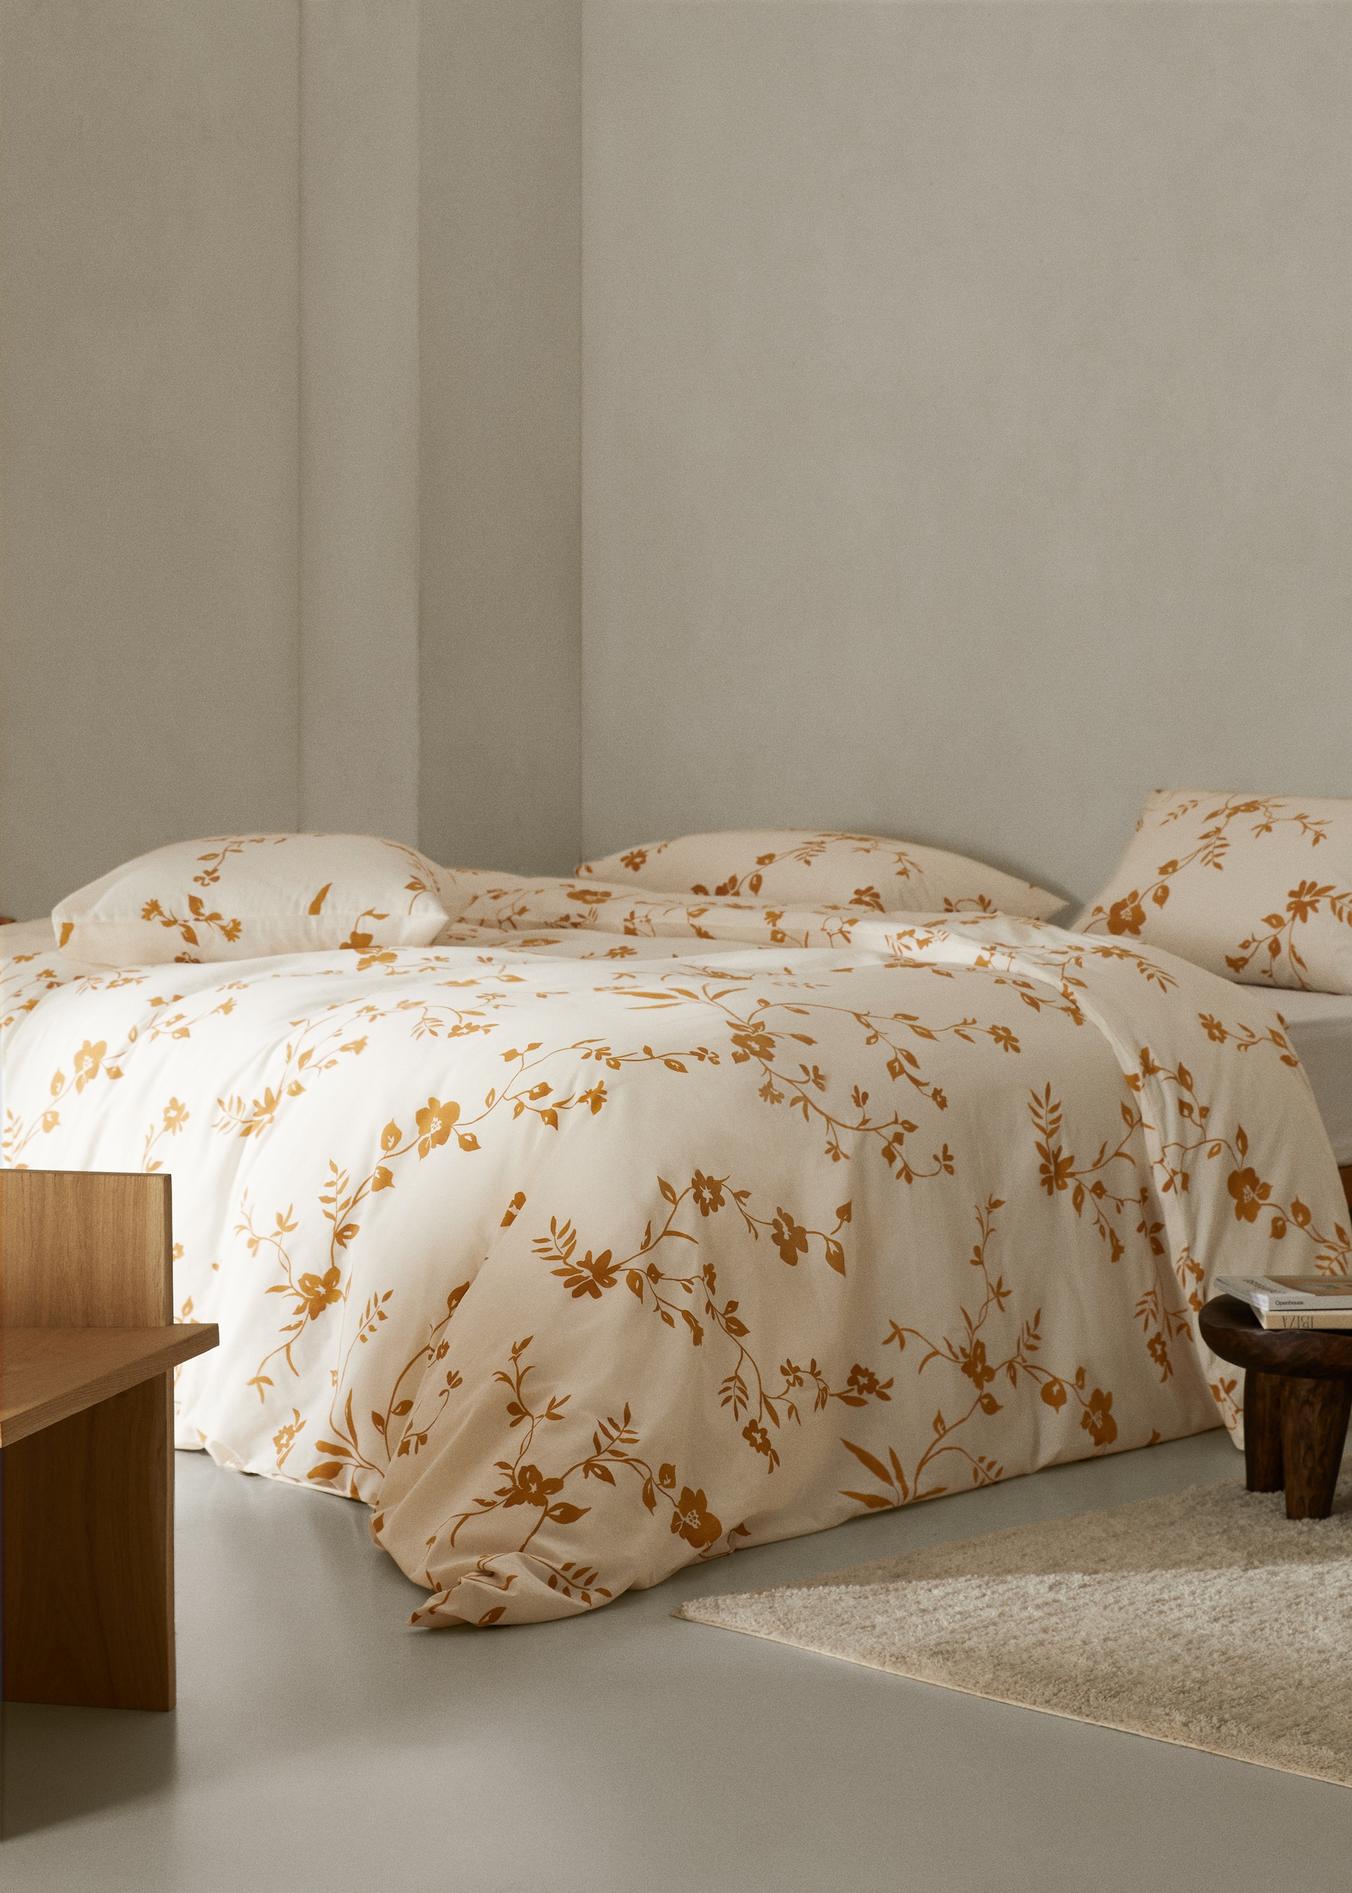 Pamut paplanhuzat virágmintával 180 cm széles ágyra kínálat, 11995 Ft a Mango -ben